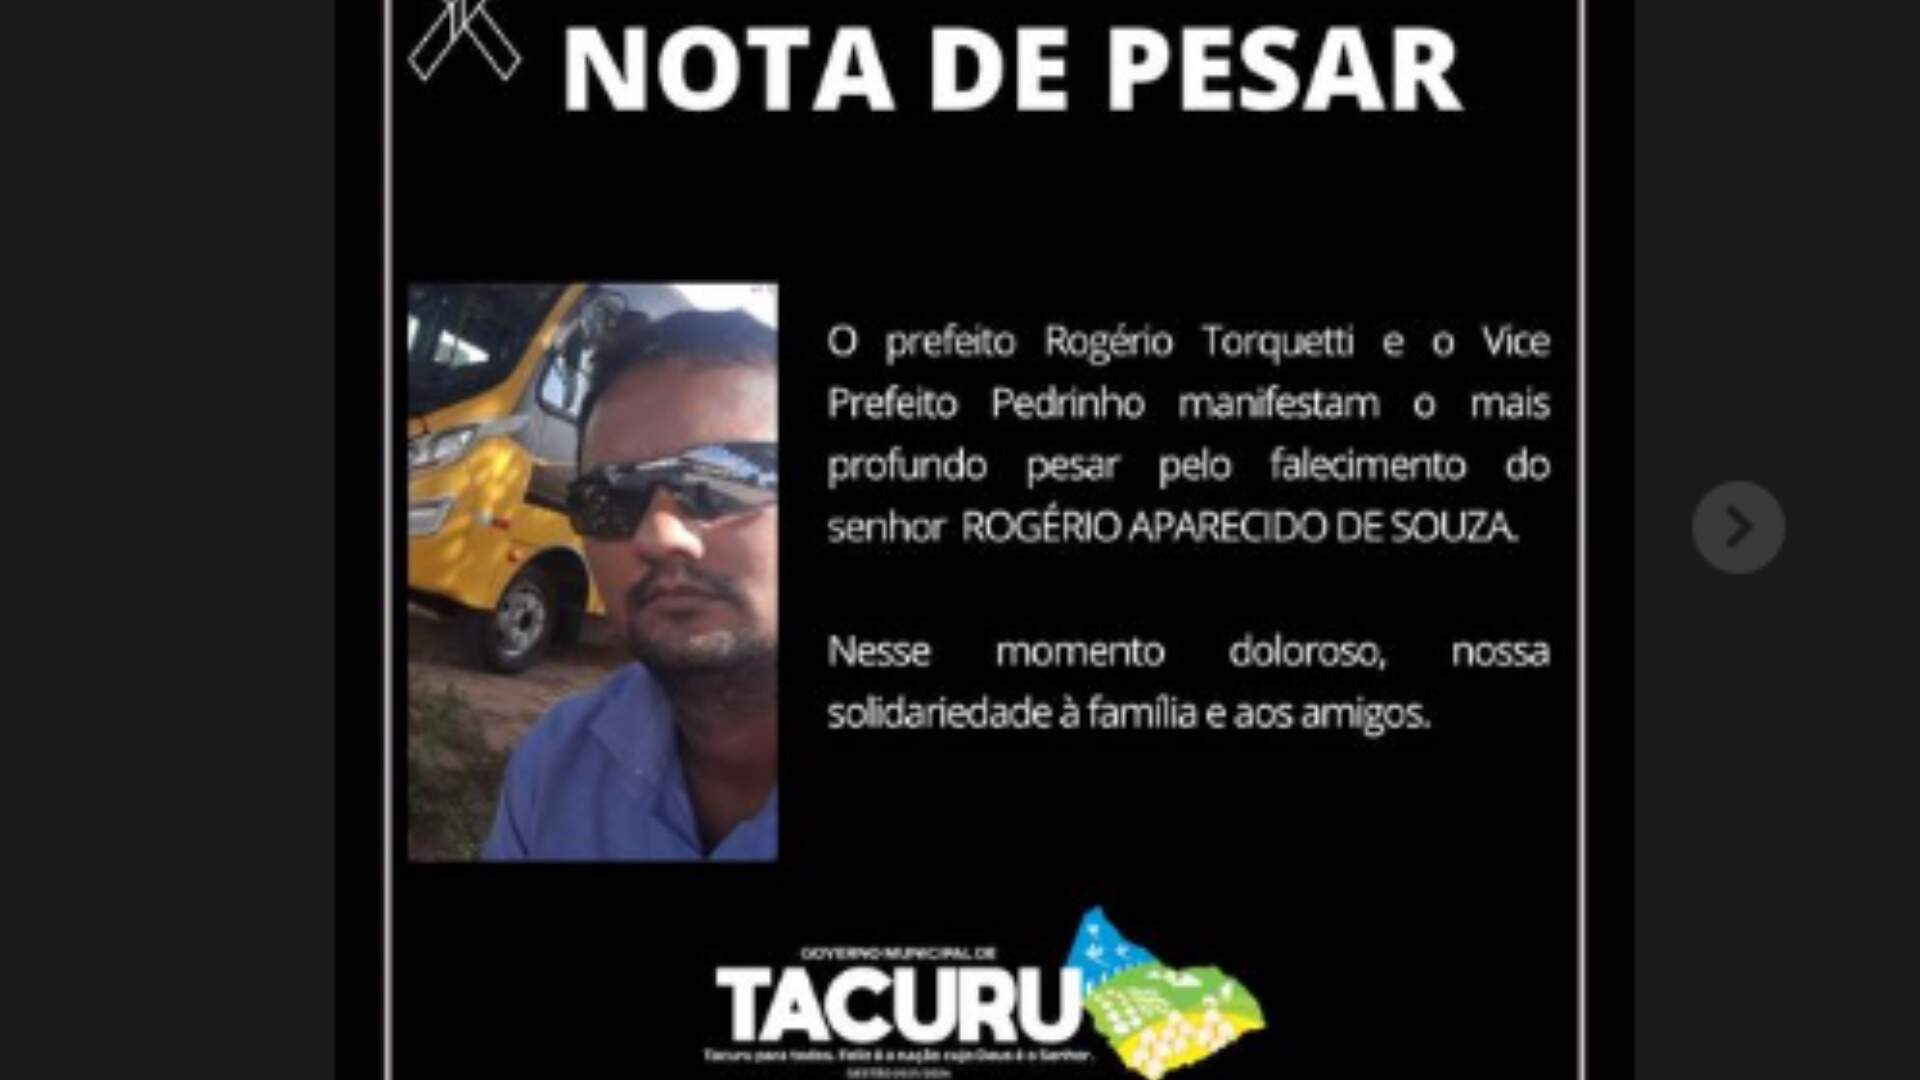 Prefeitura de Tacuru publica nota de pesar e lamenta morte de servidor